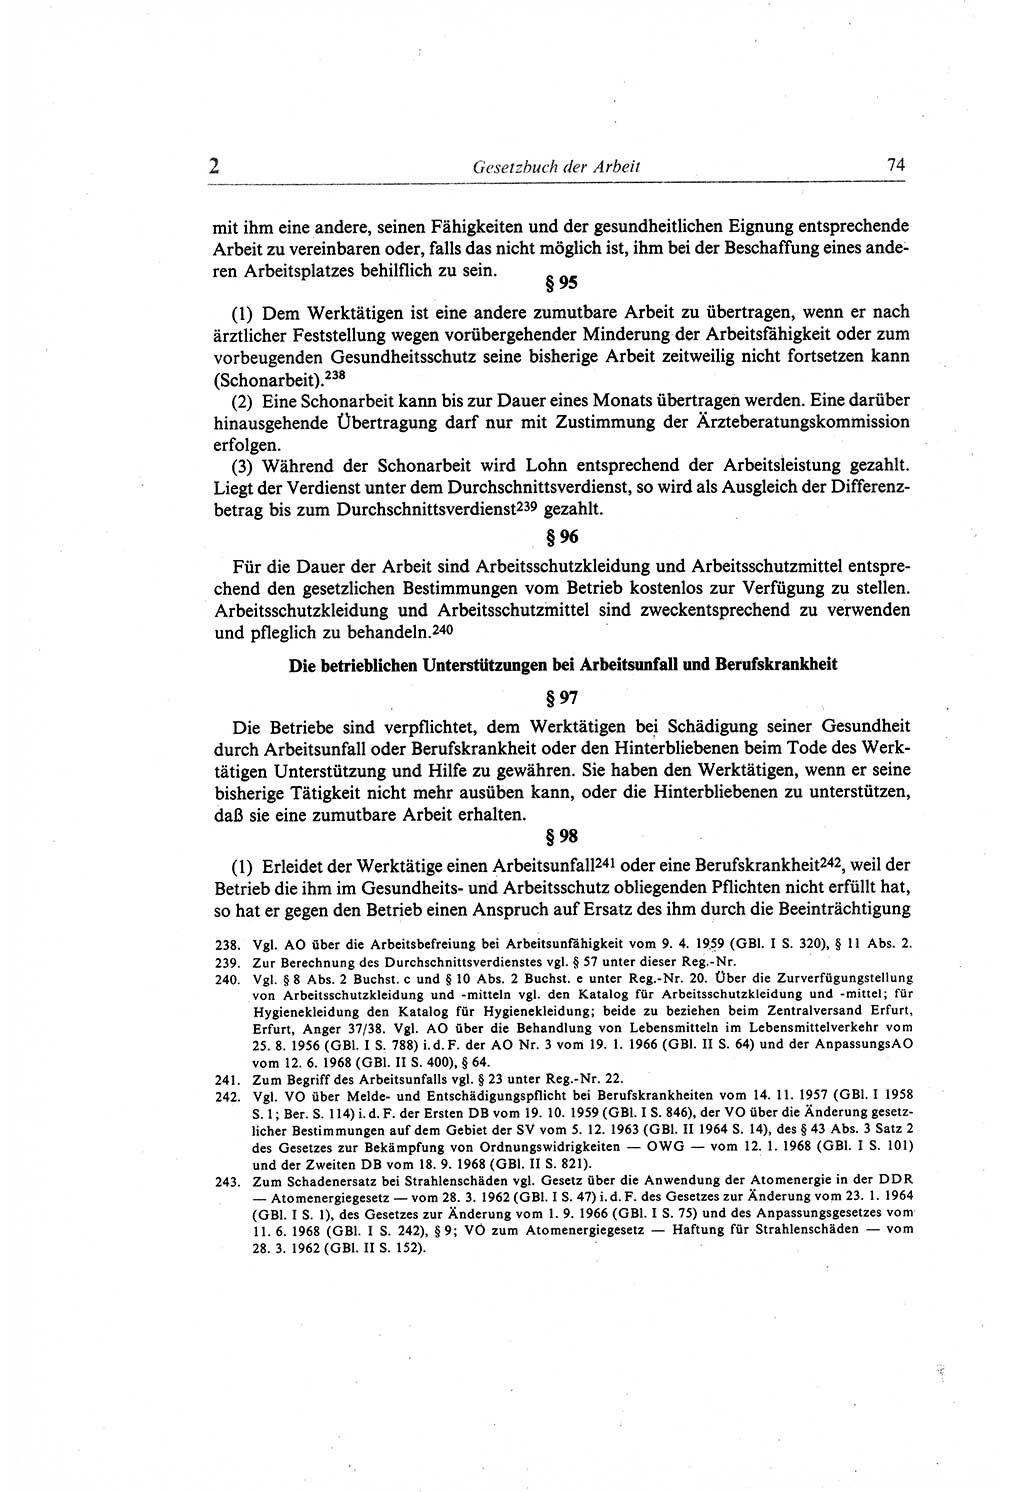 Gesetzbuch der Arbeit (GBA) und andere ausgewählte rechtliche Bestimmungen [Deutsche Demokratische Republik (DDR)] 1968, Seite 74 (GBA DDR 1968, S. 74)